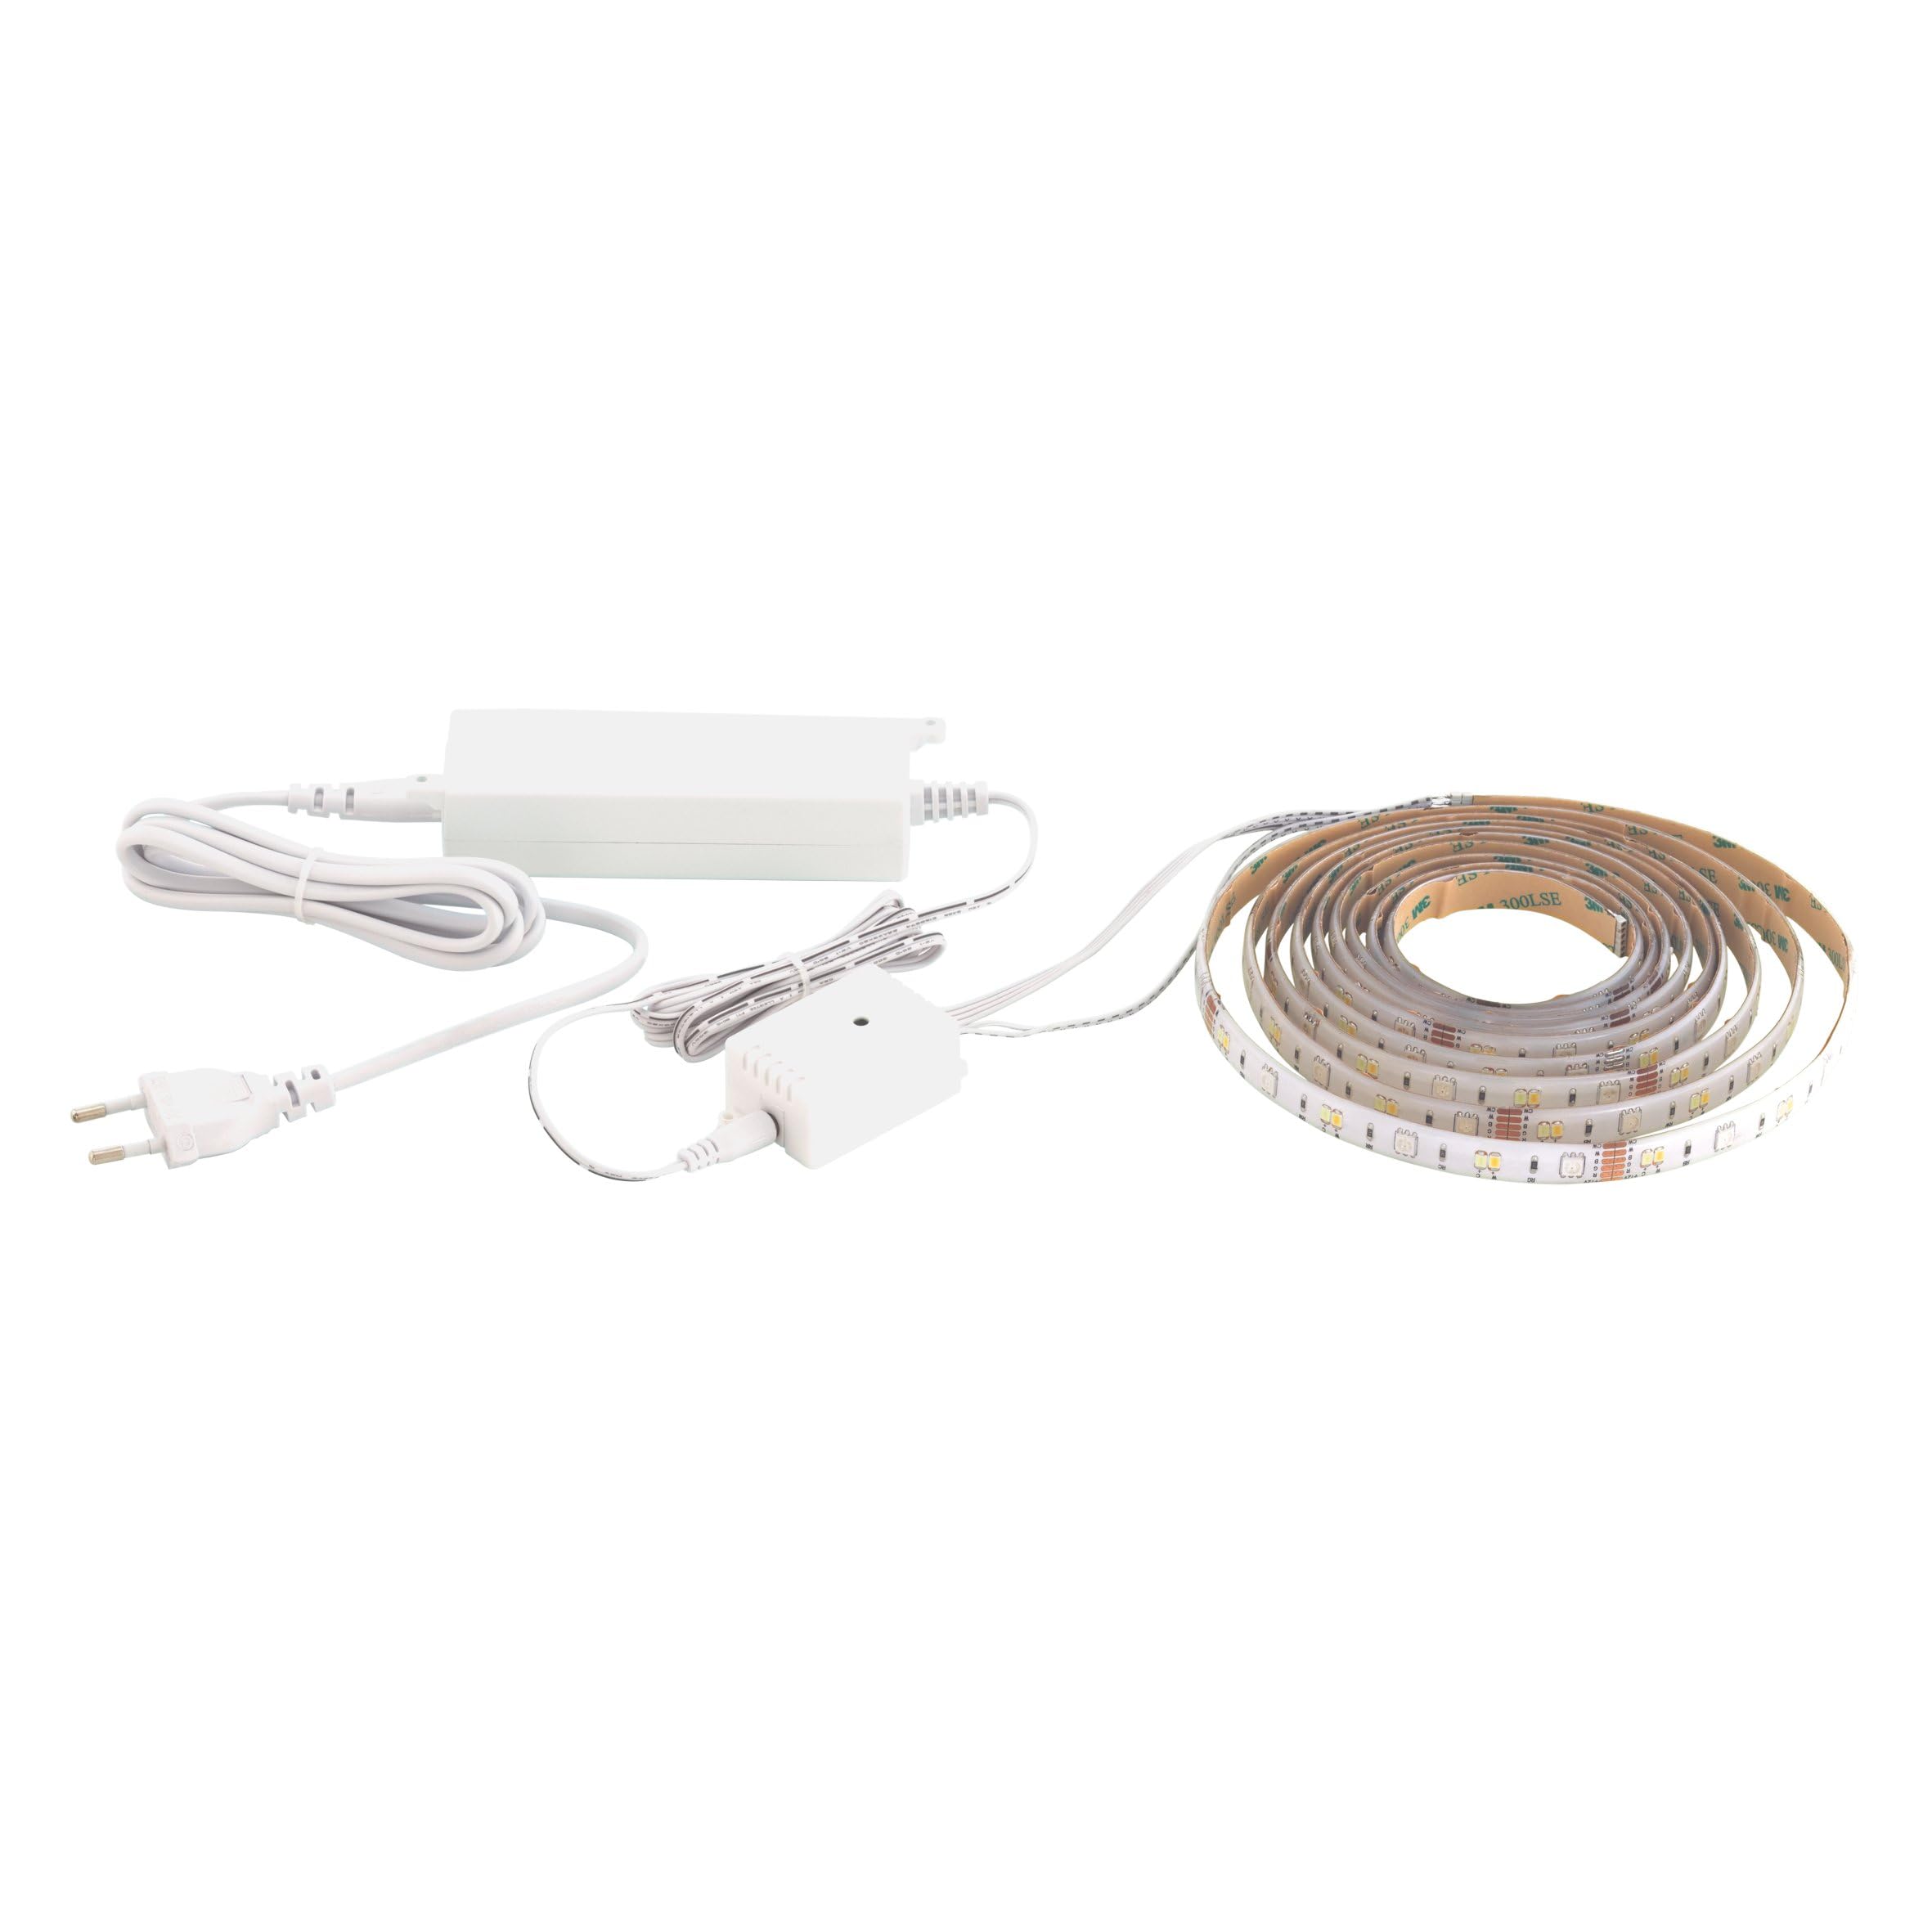 EGLO connect LED Band STRIPE-C, Smart Home Leuchtband, RGB Band selbstklebend und kürzbar, Kunststoff in Weiß, dimmbar, Weißtöne und Farben einstellbar, Beleuchtung Wohnzimmer, Länge 5m